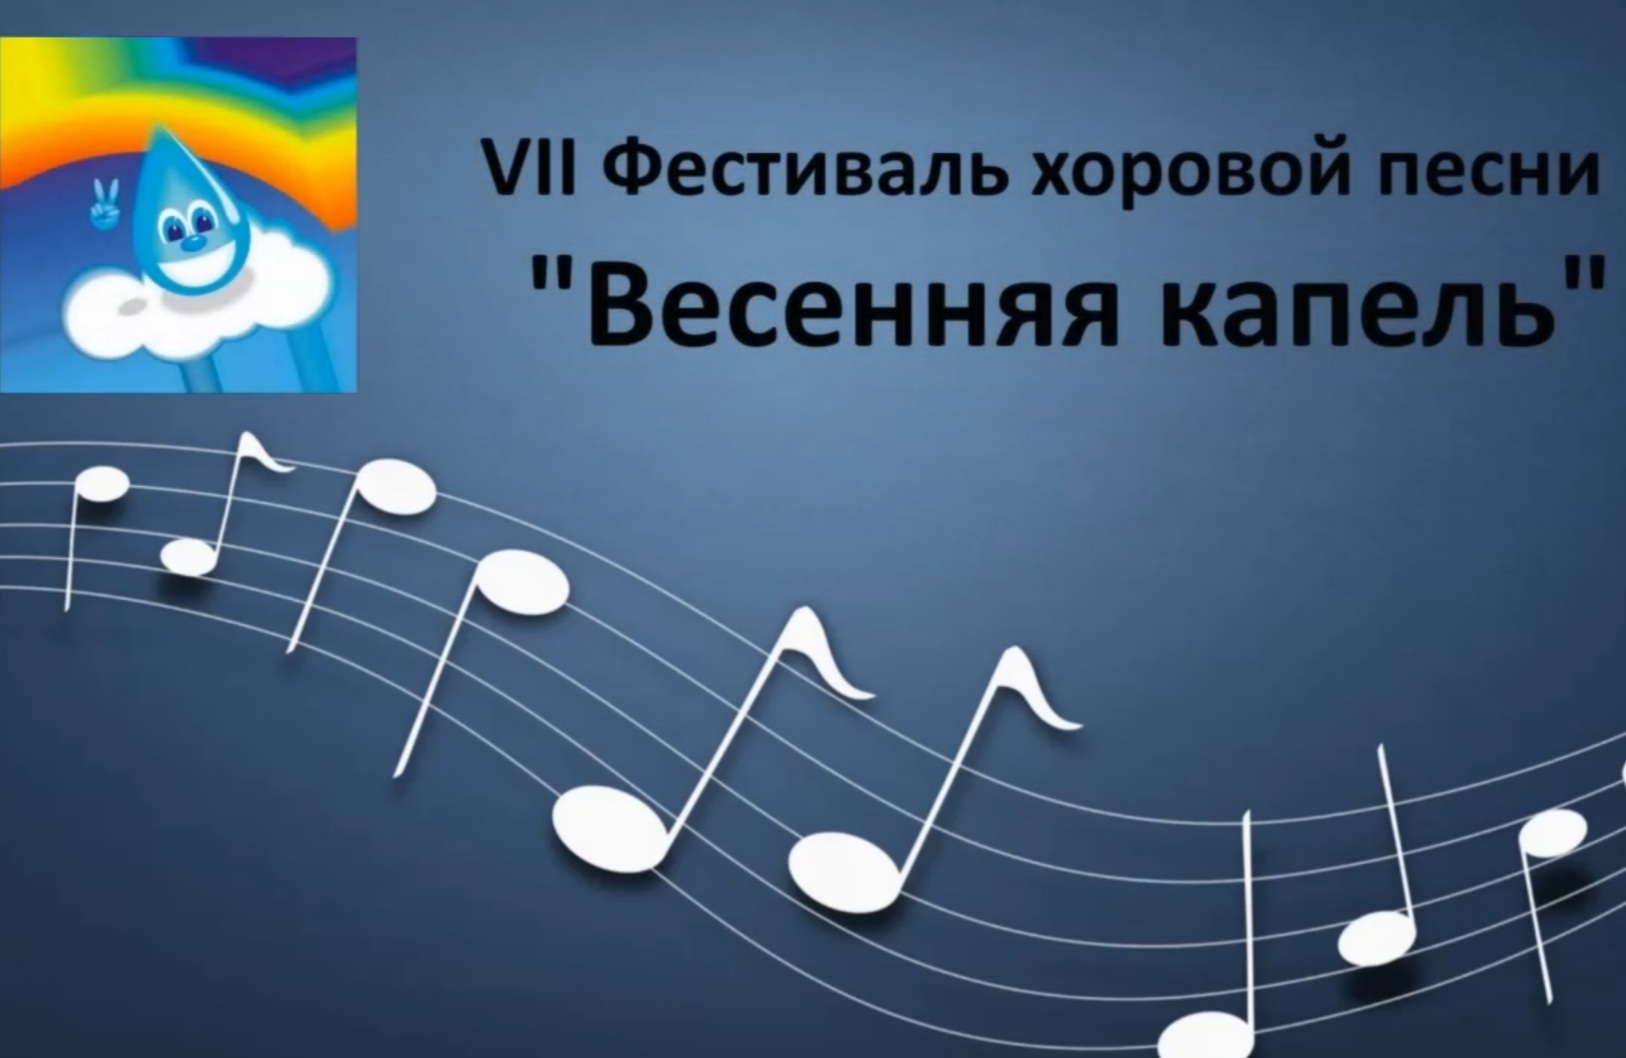 VII Фестиваль хоровой песни «Весенняя капель» впервые прошел в онлайн-формате